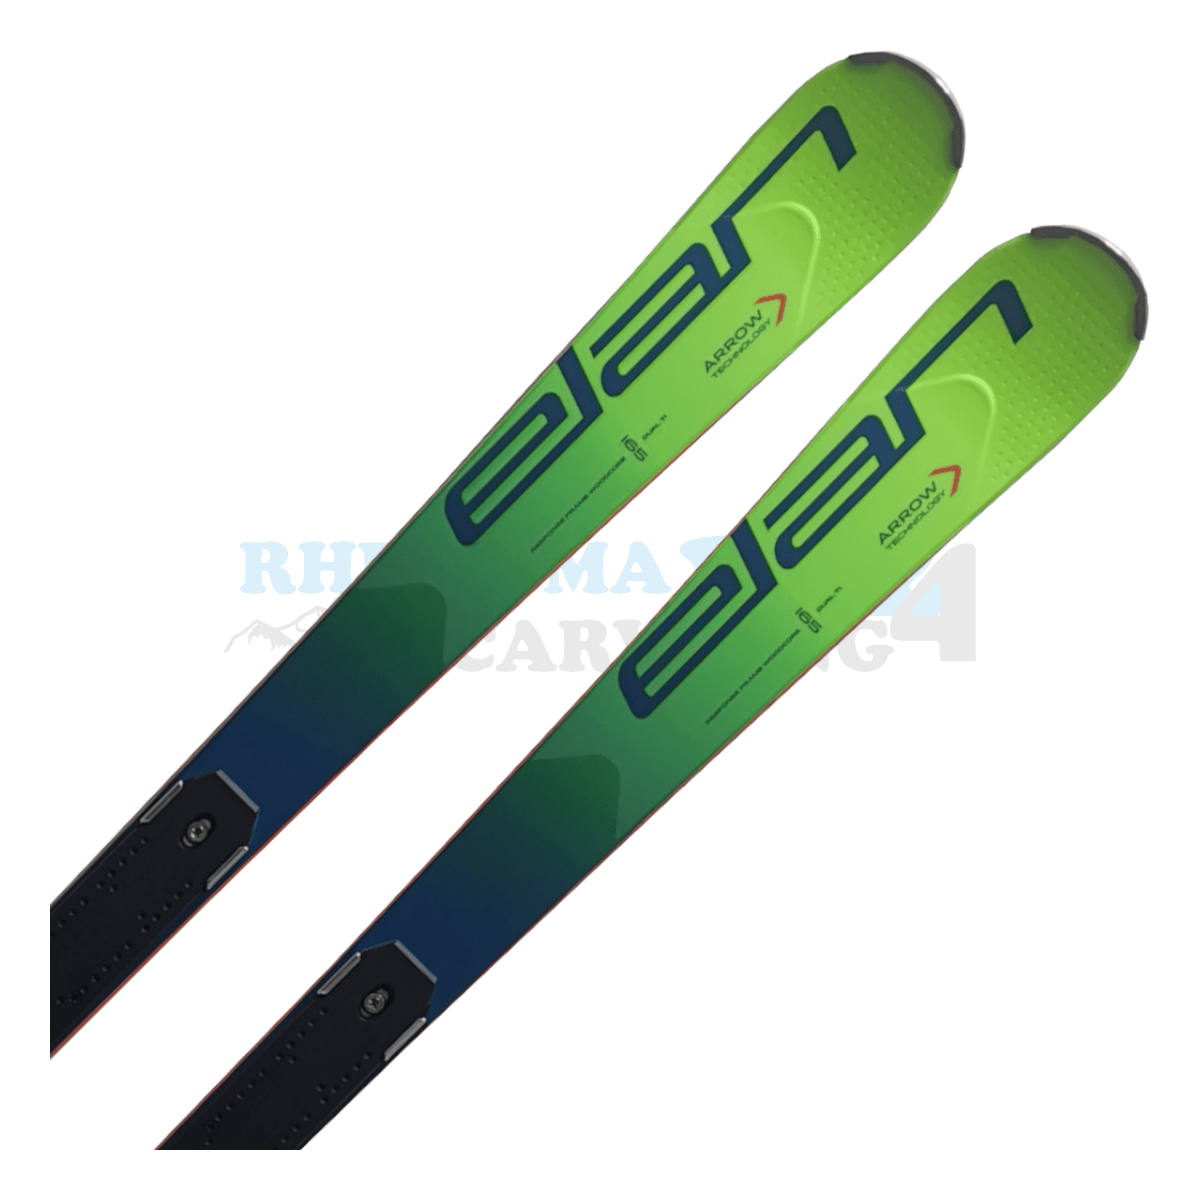 Elan SLX Worldcup FIS Ski mit der Rennplatte, der Ski ist aus dem Jahr 2020, der Ski ist in der Farbe grün, die Ansicht des oberen Teils des Skis